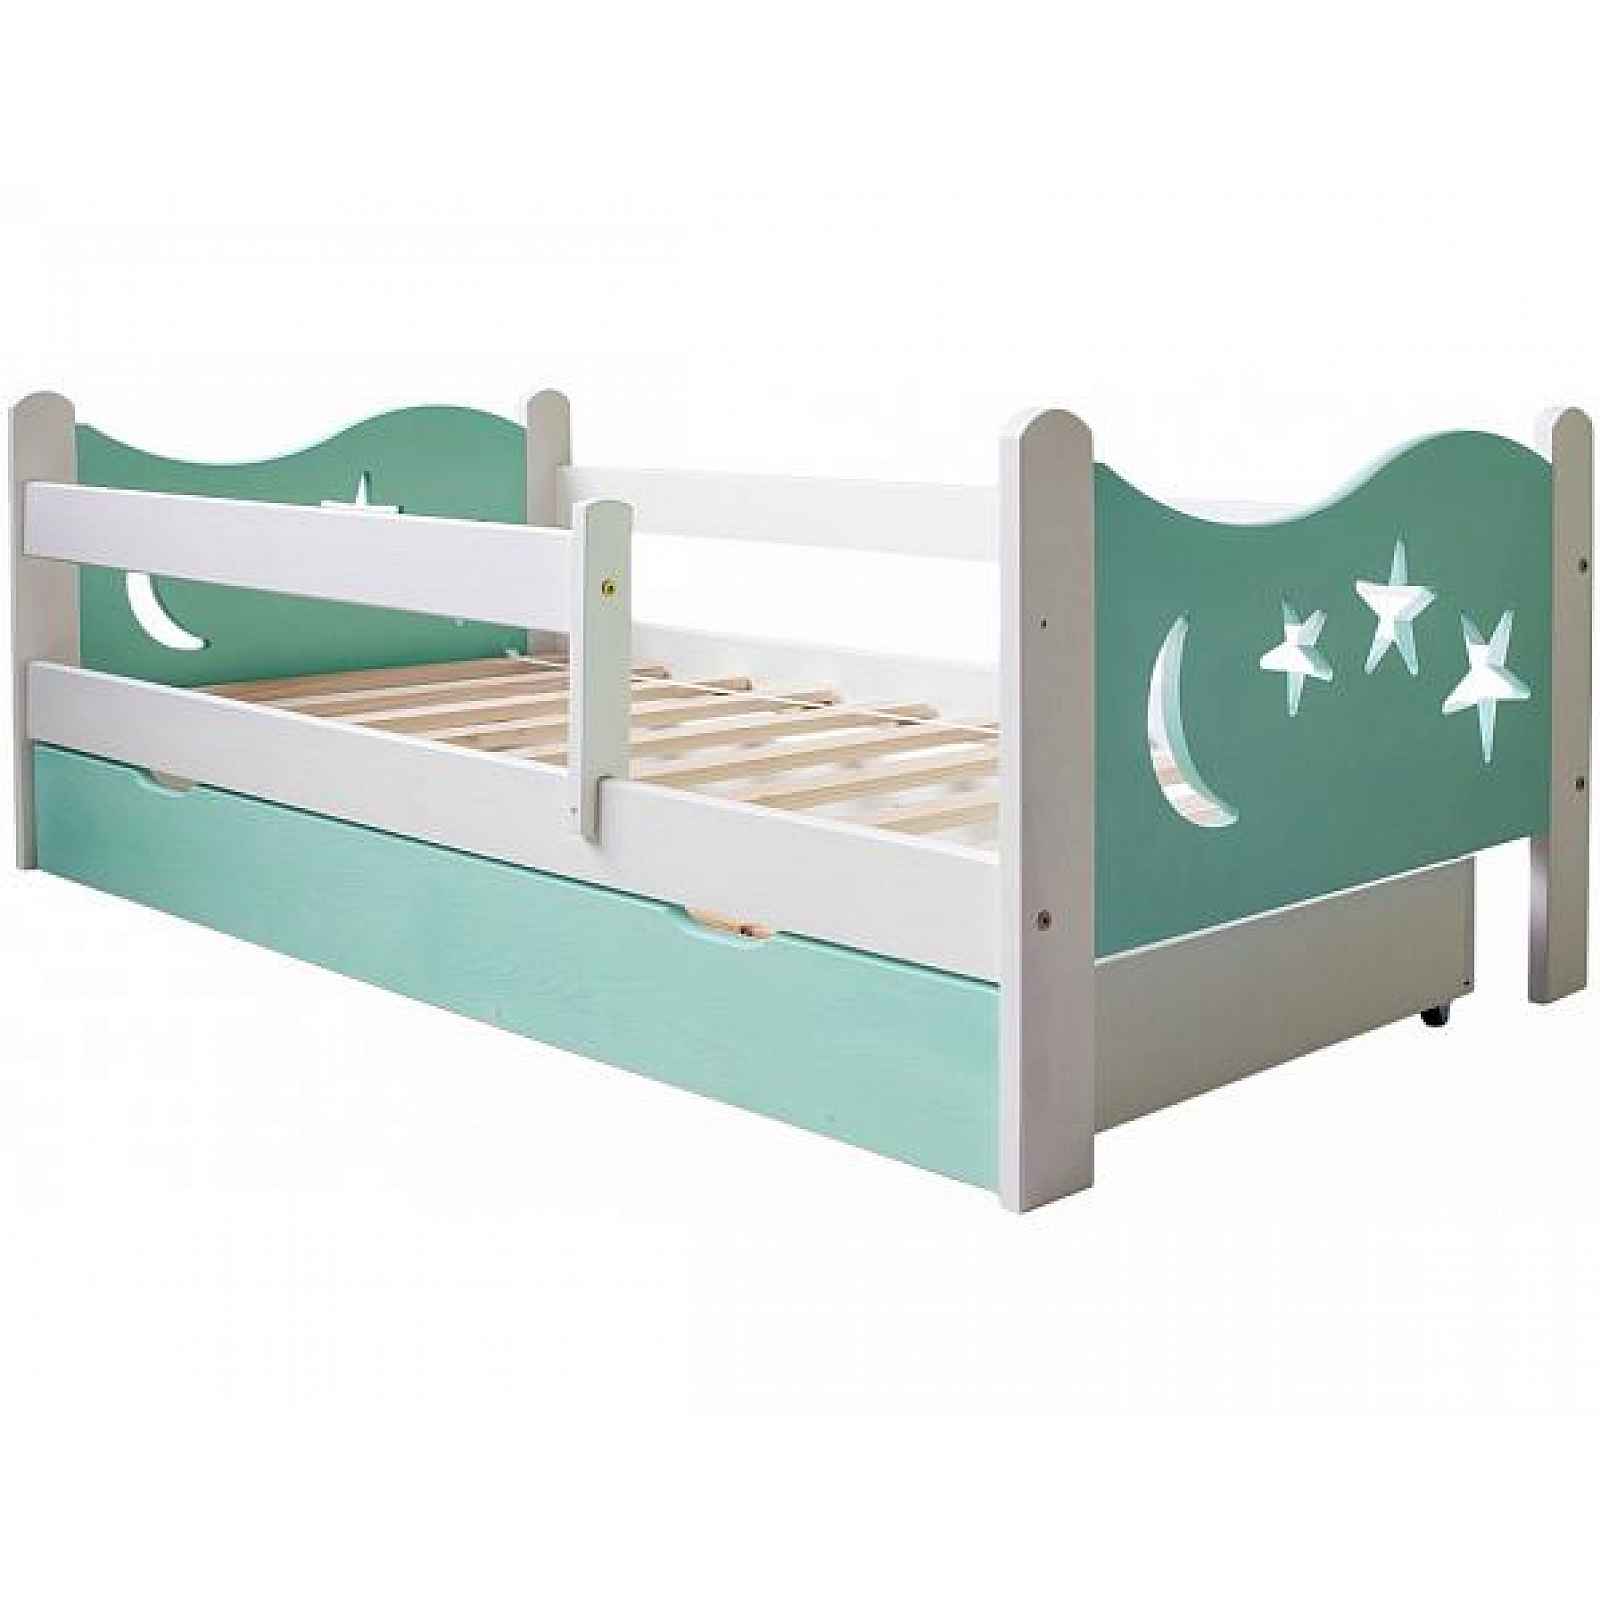 Dětská postel HVĚZDA MÁTA 70x140 cm (RD 70/14), UP138, 70x140 cm